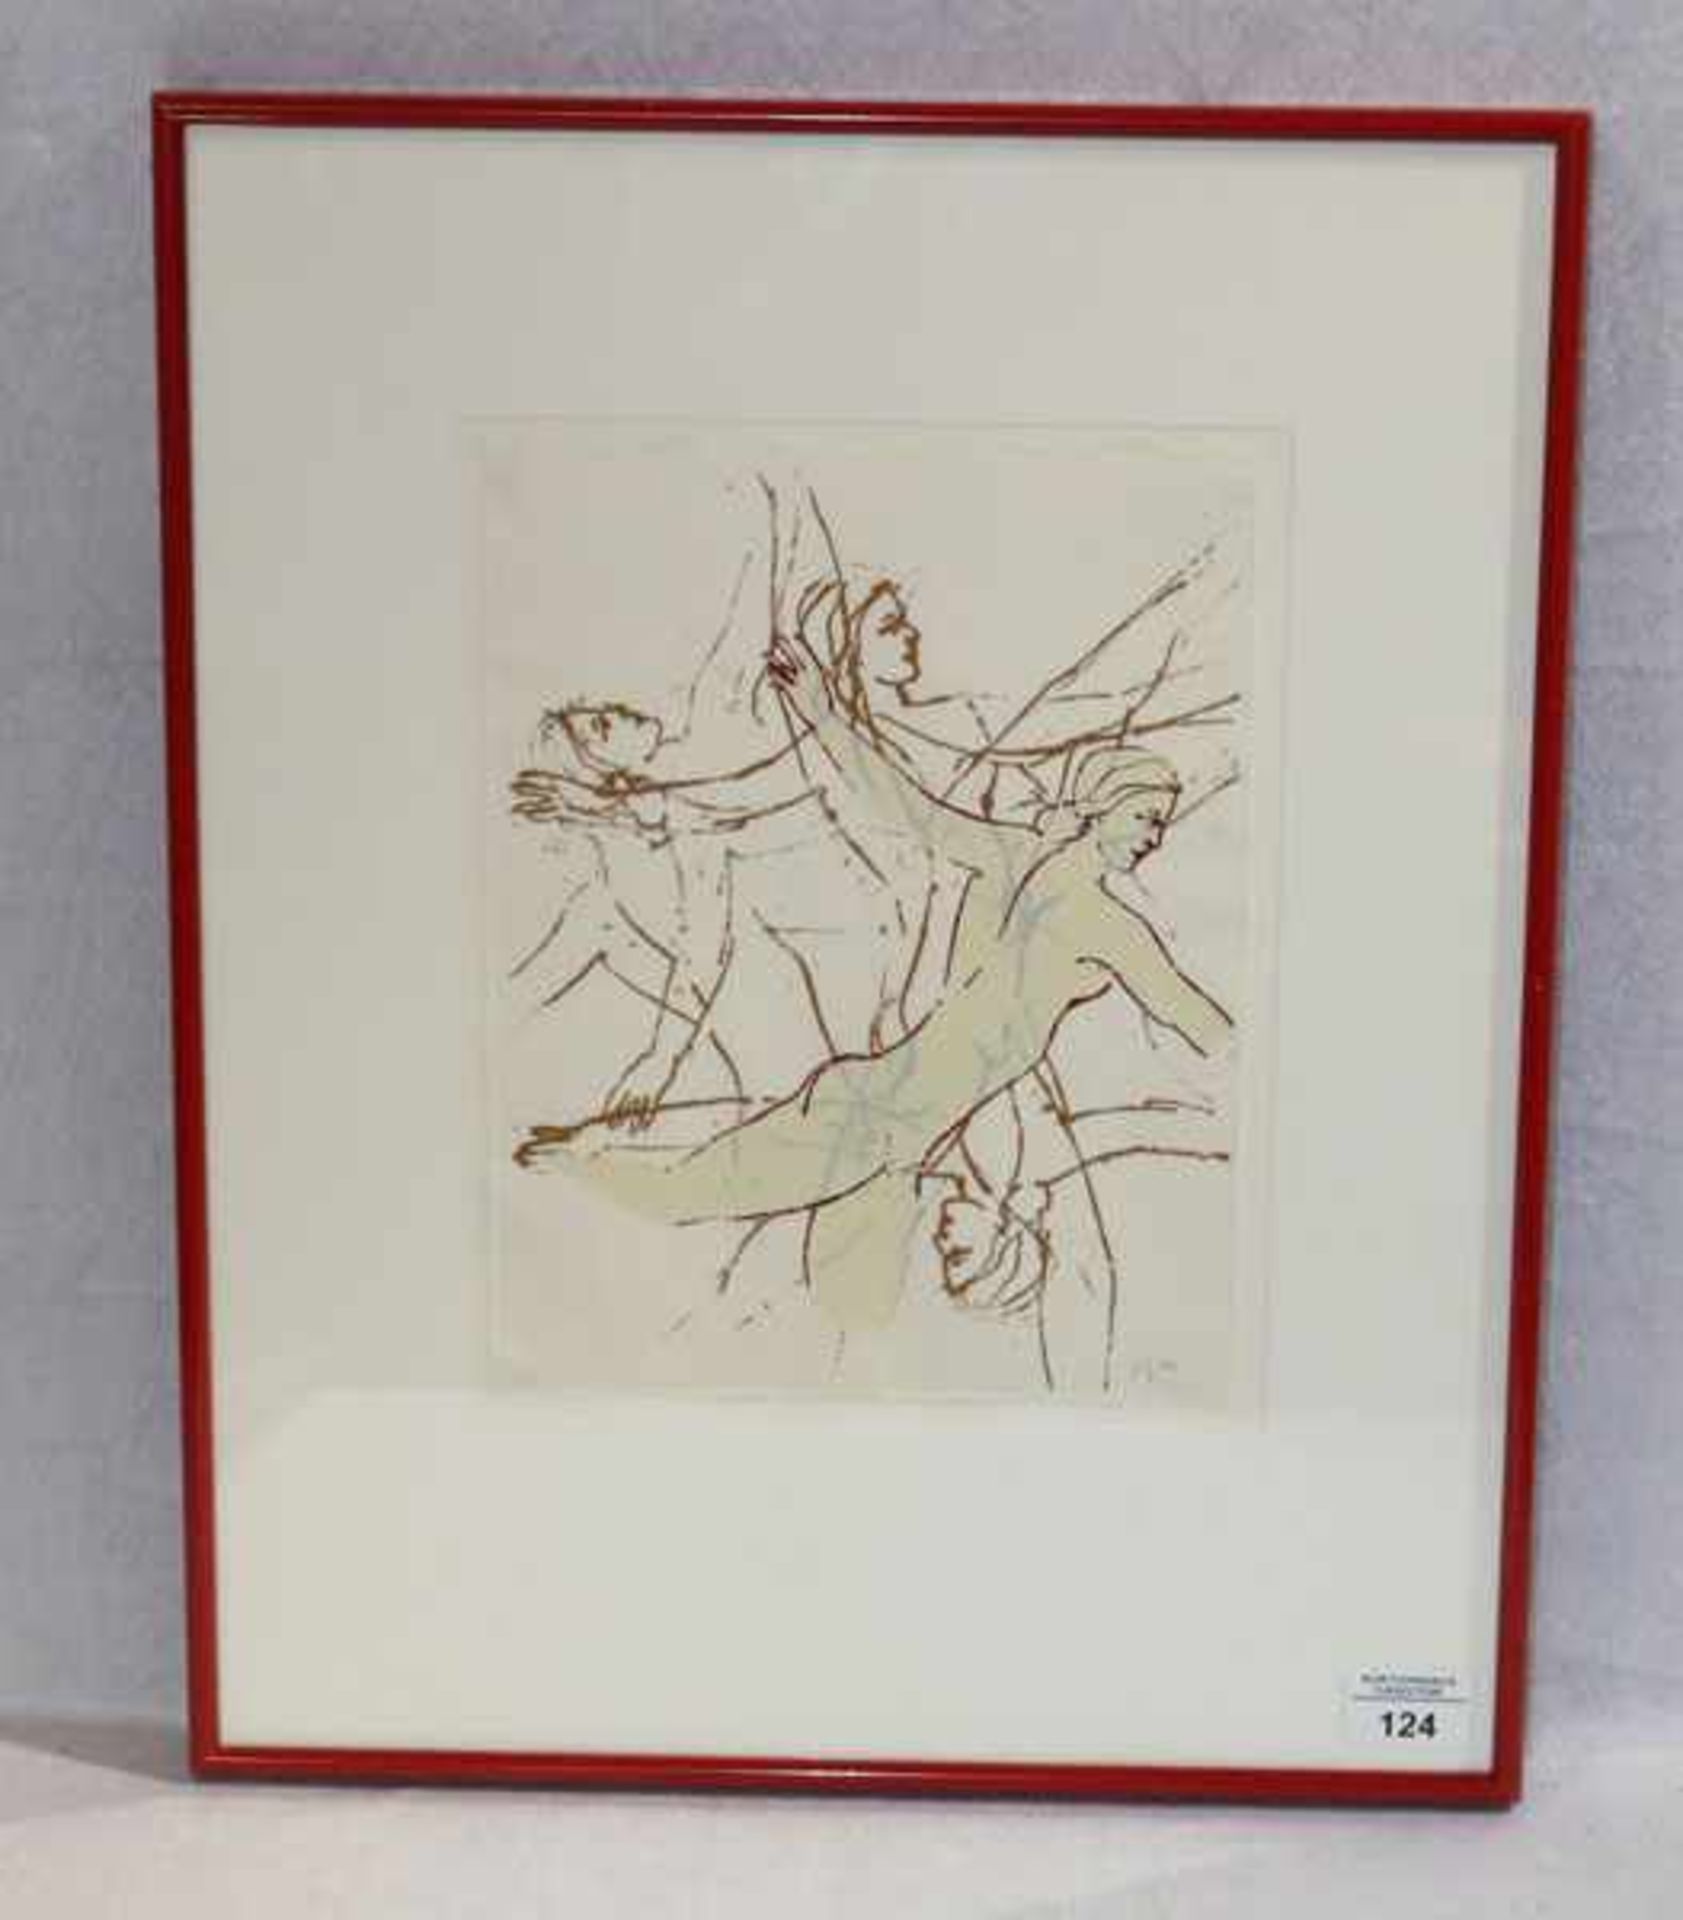 Farbsiebdruck 'Dancers 1994', monogrammiert NS für Nancy Spero, dat. (19)94, * 1926 Cleveland + 2009